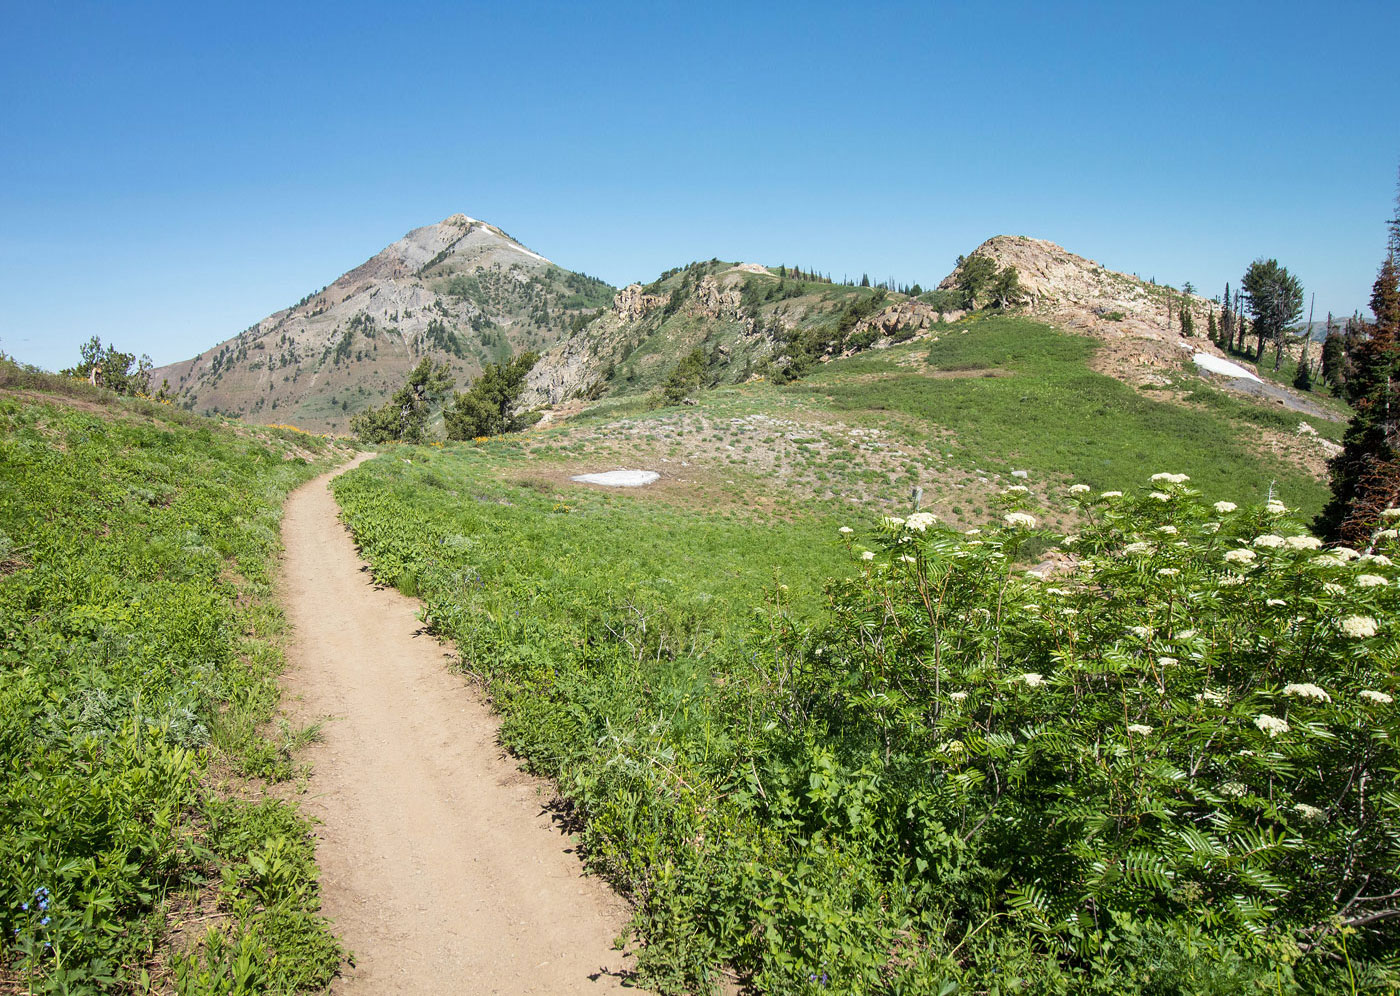 Hike Ben Lomond, Willard Peak, Inspiration Point via Skyline Trail in Wasatch-Cache National Forest, Utah - Stav is Lost